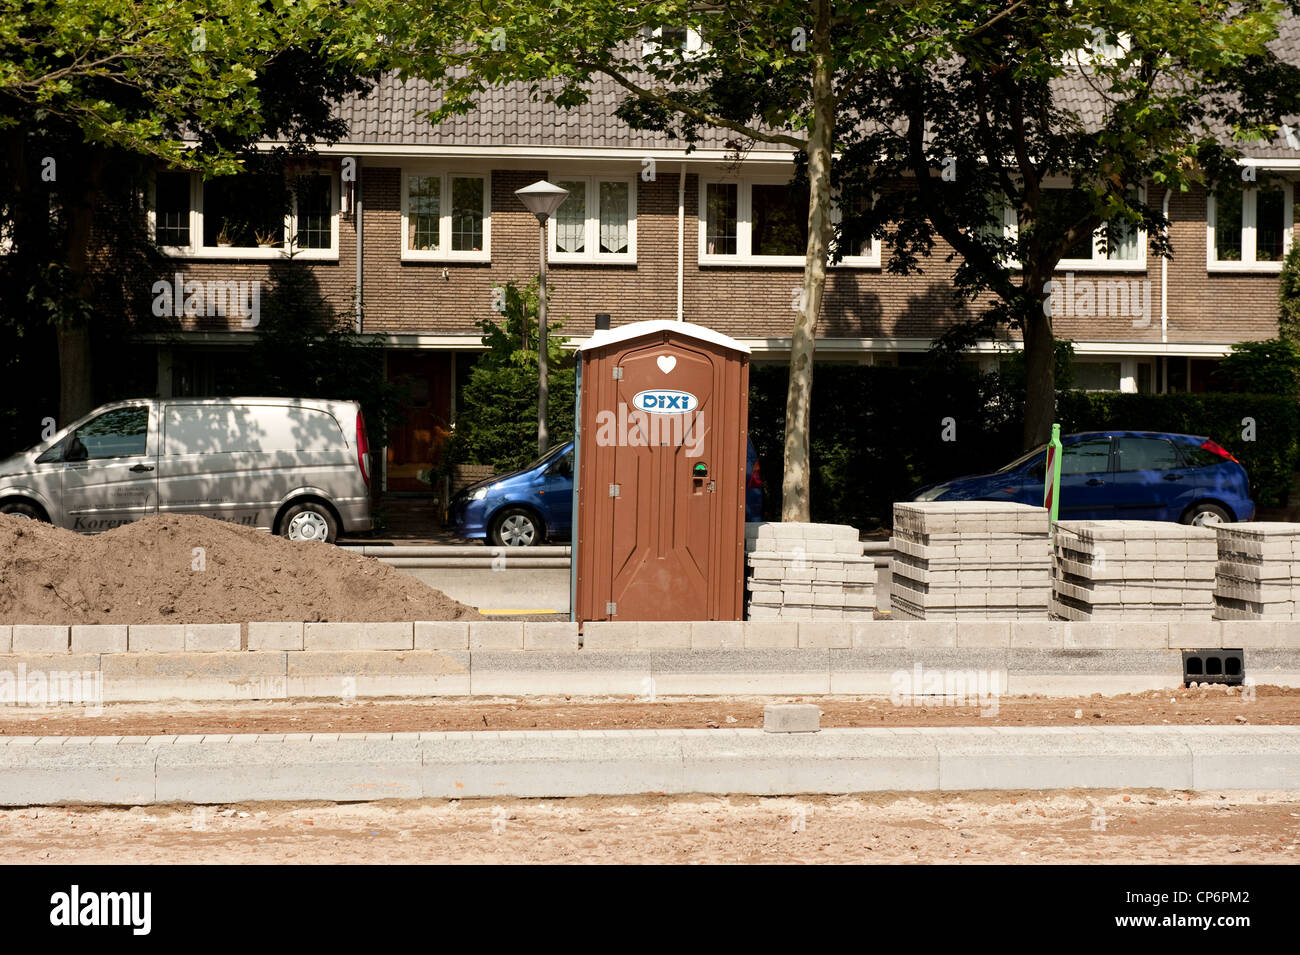 Brown Construction de toilettes portables Wassenaar Site Pays-bas Hollande Europe EU Banque D'Images